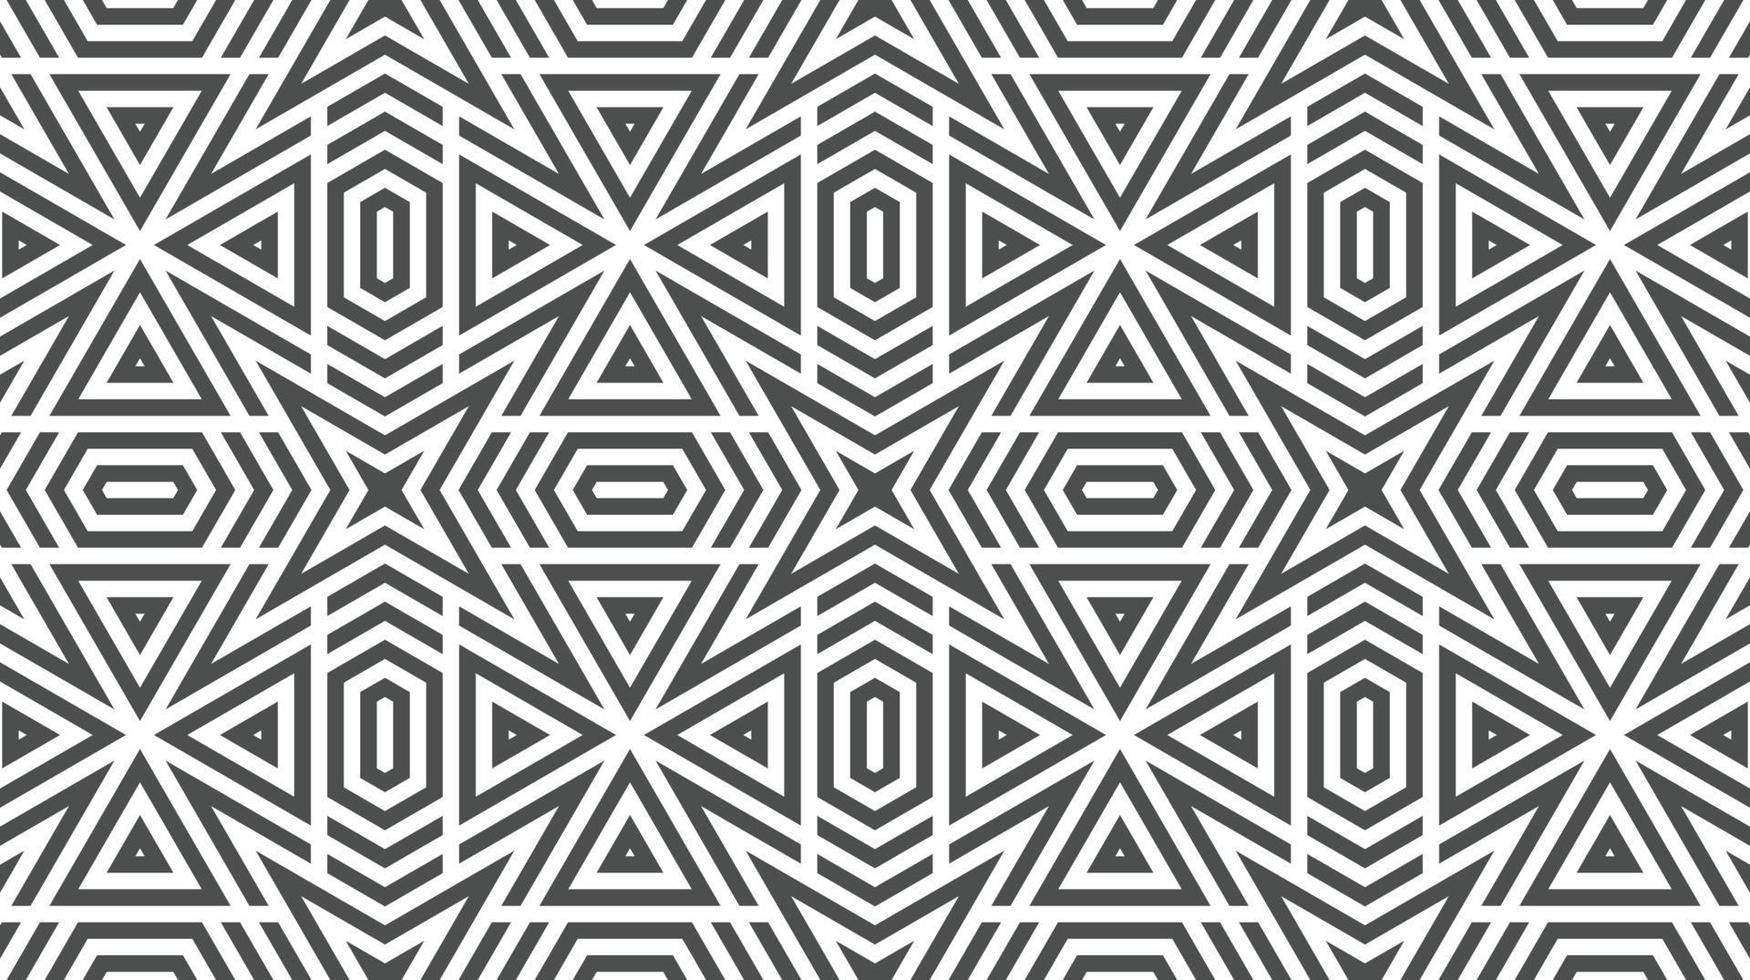 abstracte naadloze zeshoekige driehoek vormen patroon vector